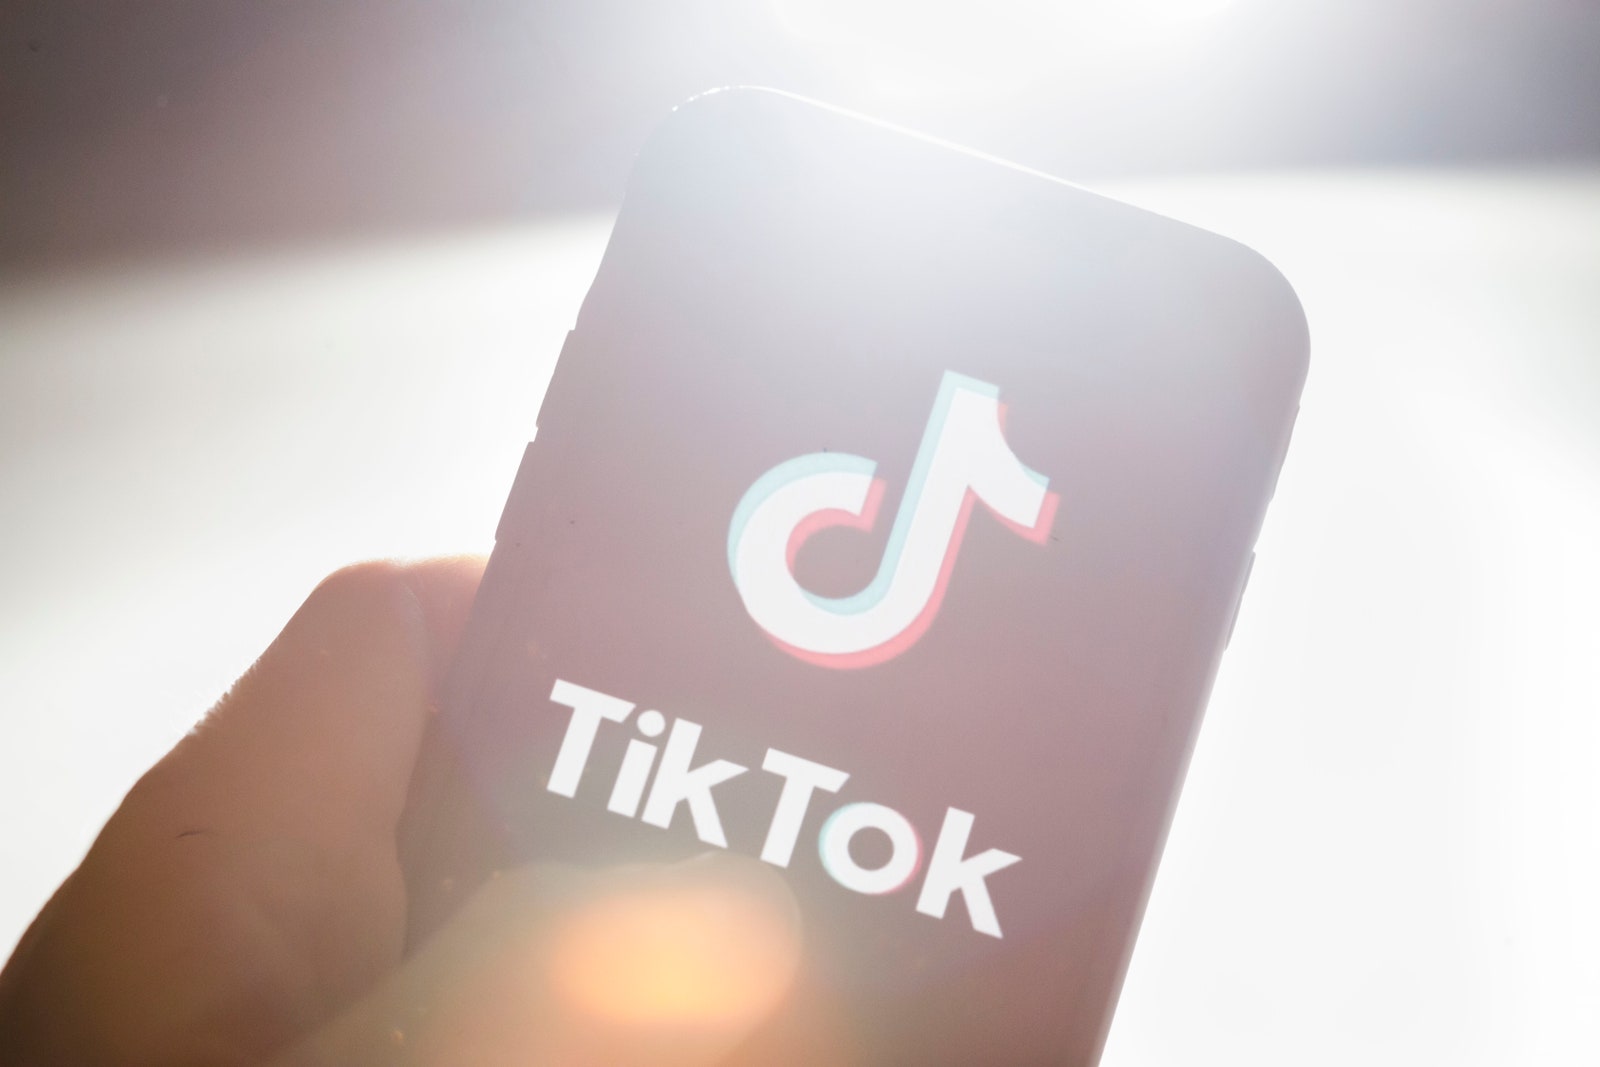 Самые популярные видео знаменитости и челленджи 2019 года в TikTok